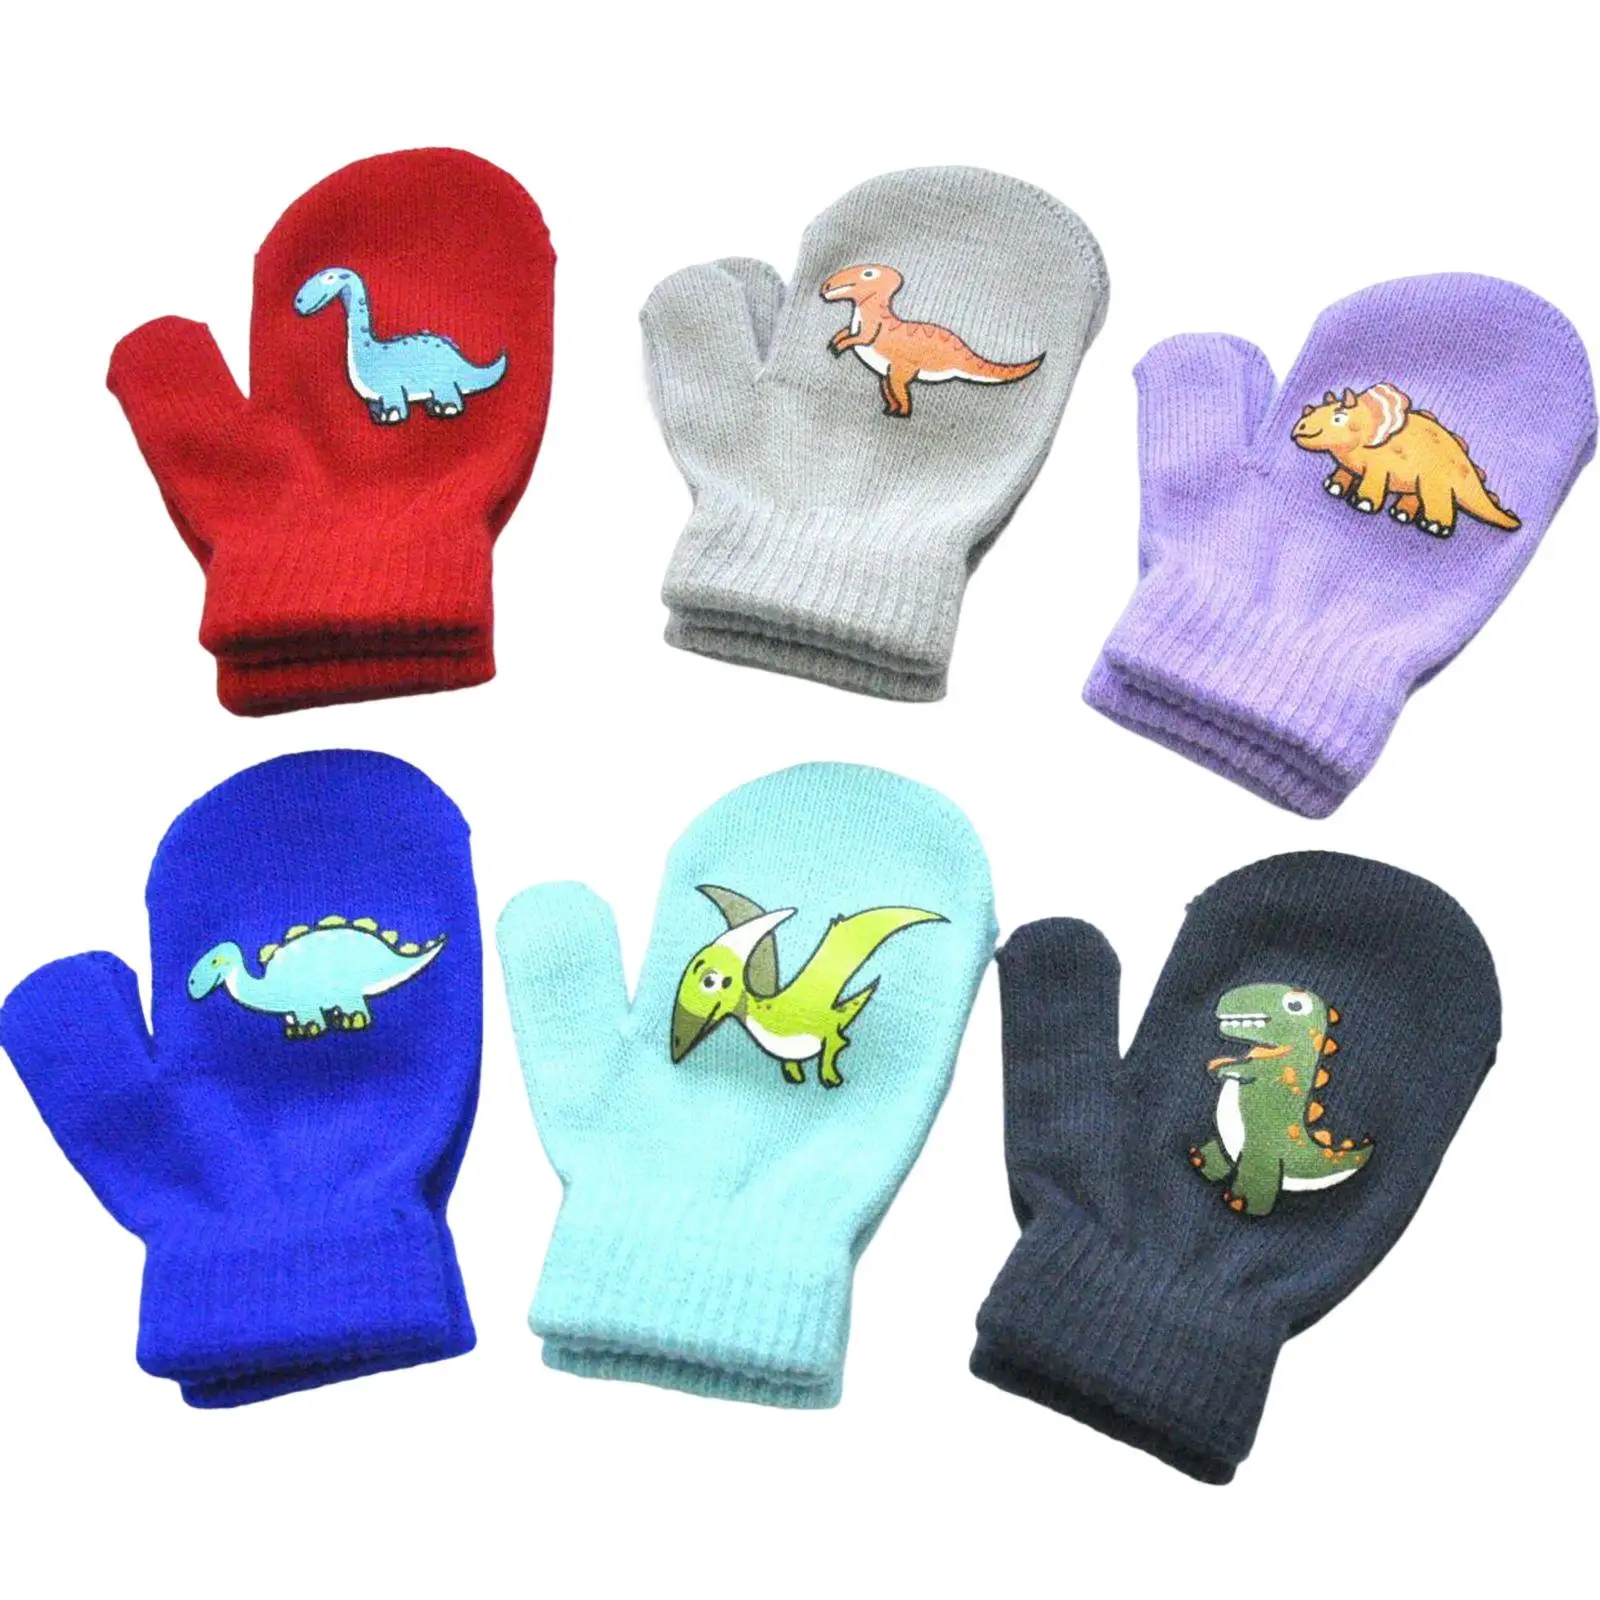 6x Children Winter Gloves Dinosaurs Pattern Full Fingers for Boys Girls Soft